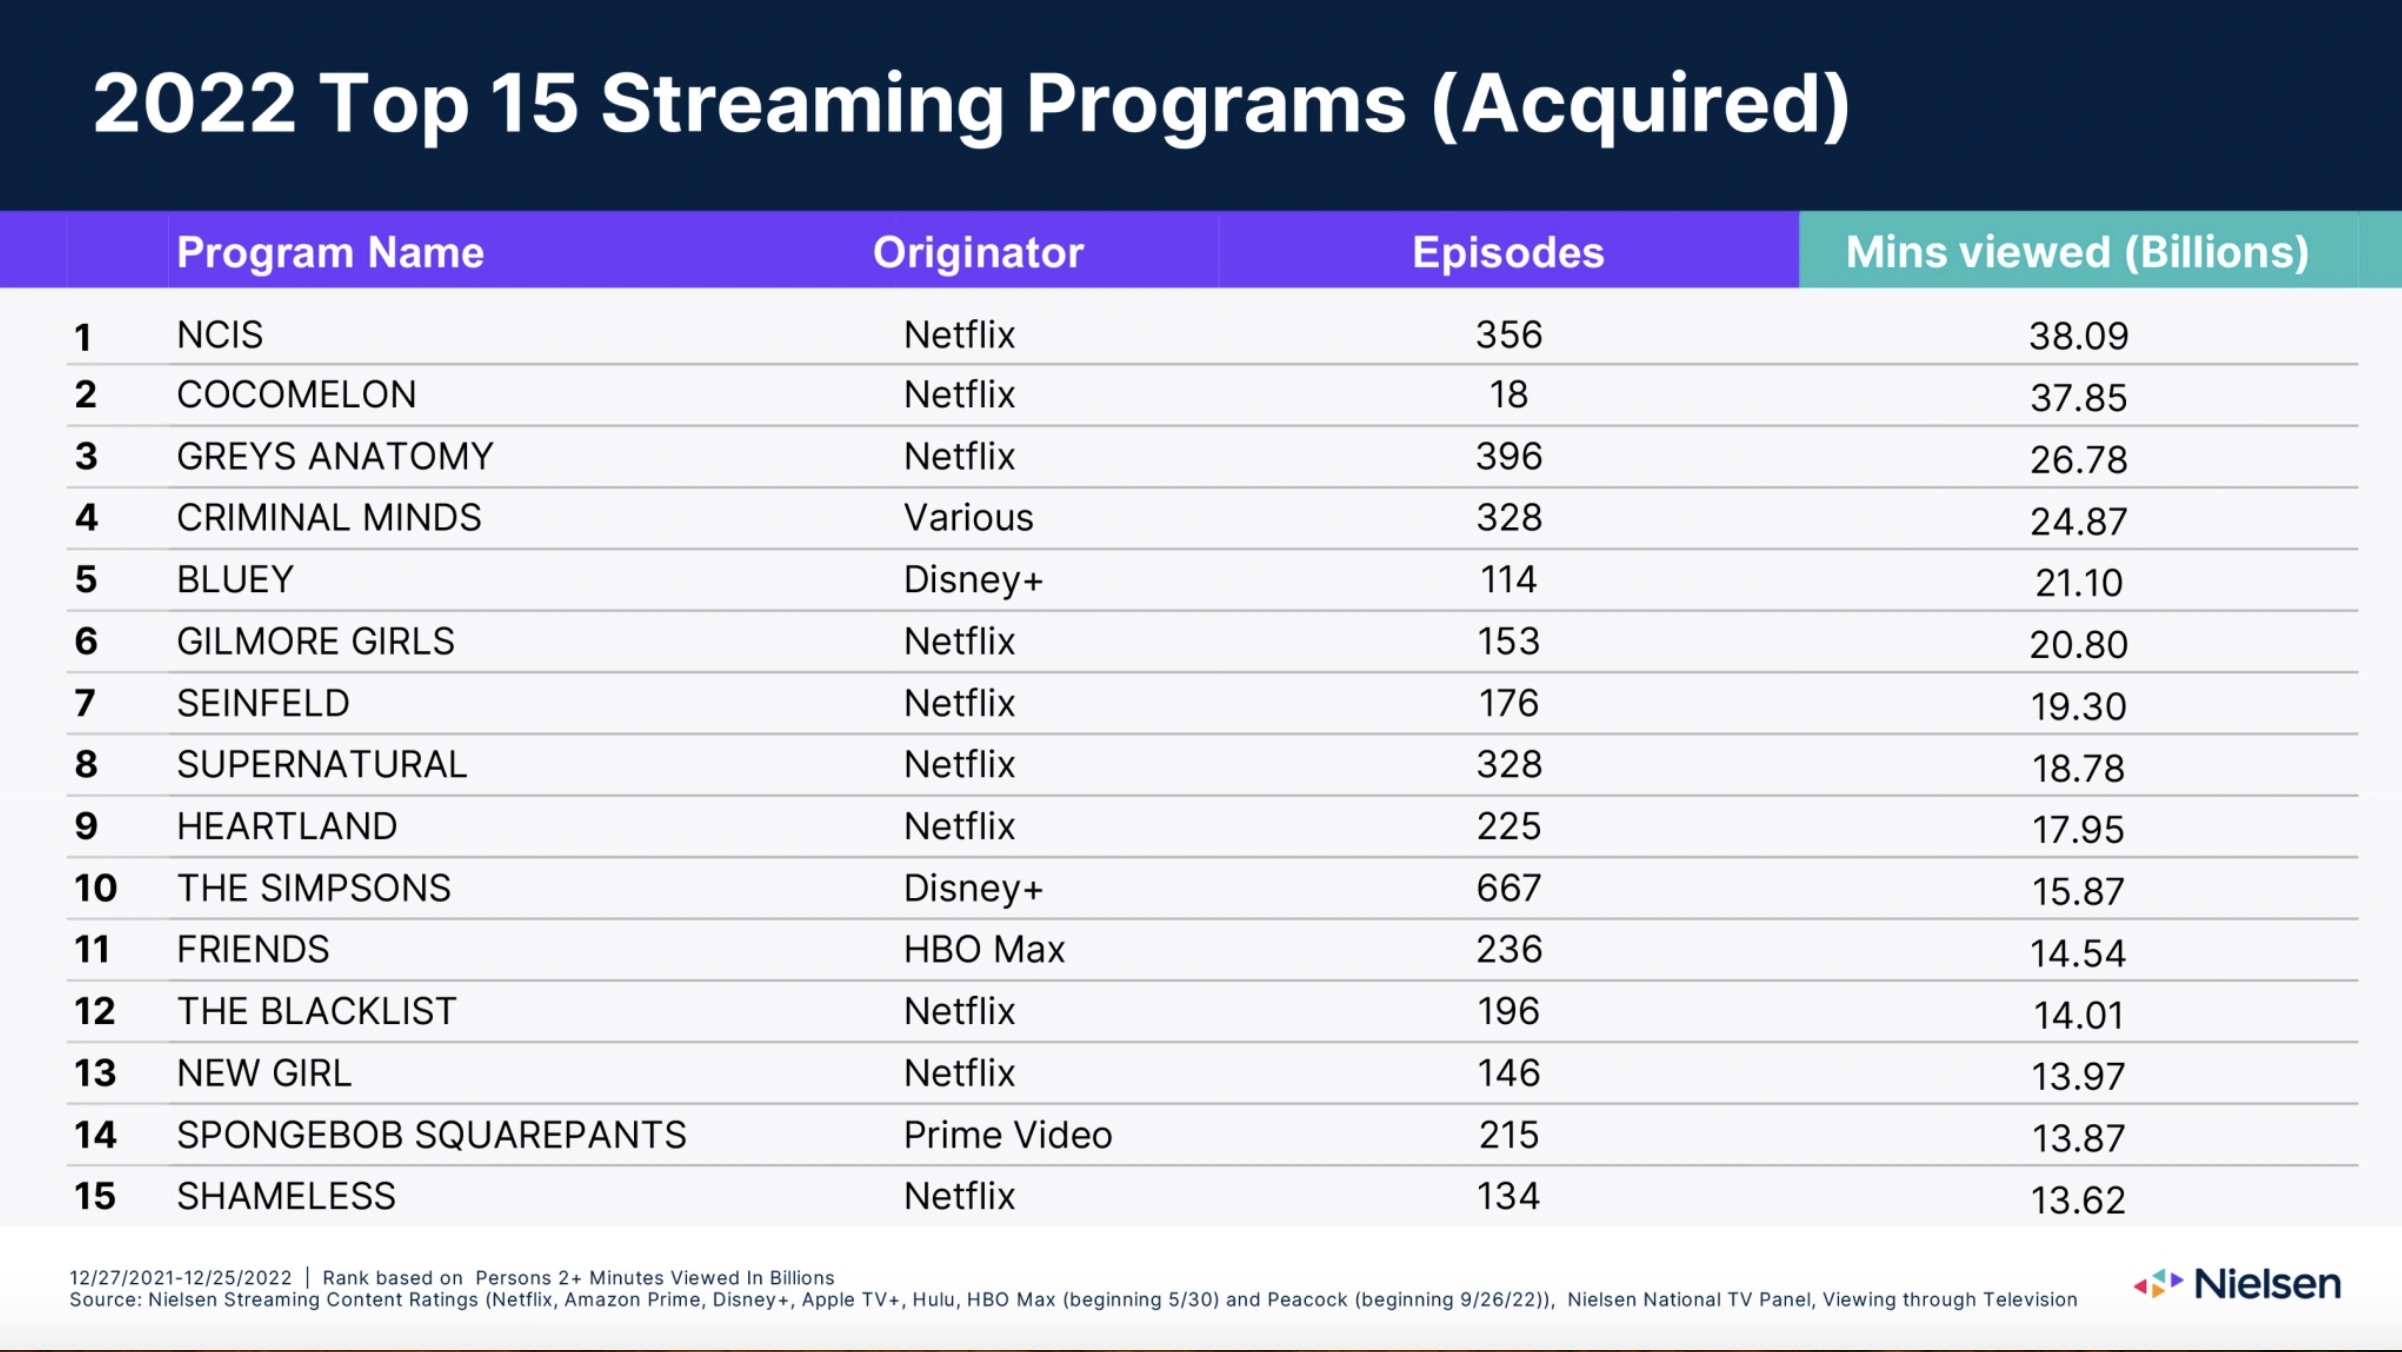 Gráfico para os 15 principais programas de streaming da Nielsen em 2022 adquiridos